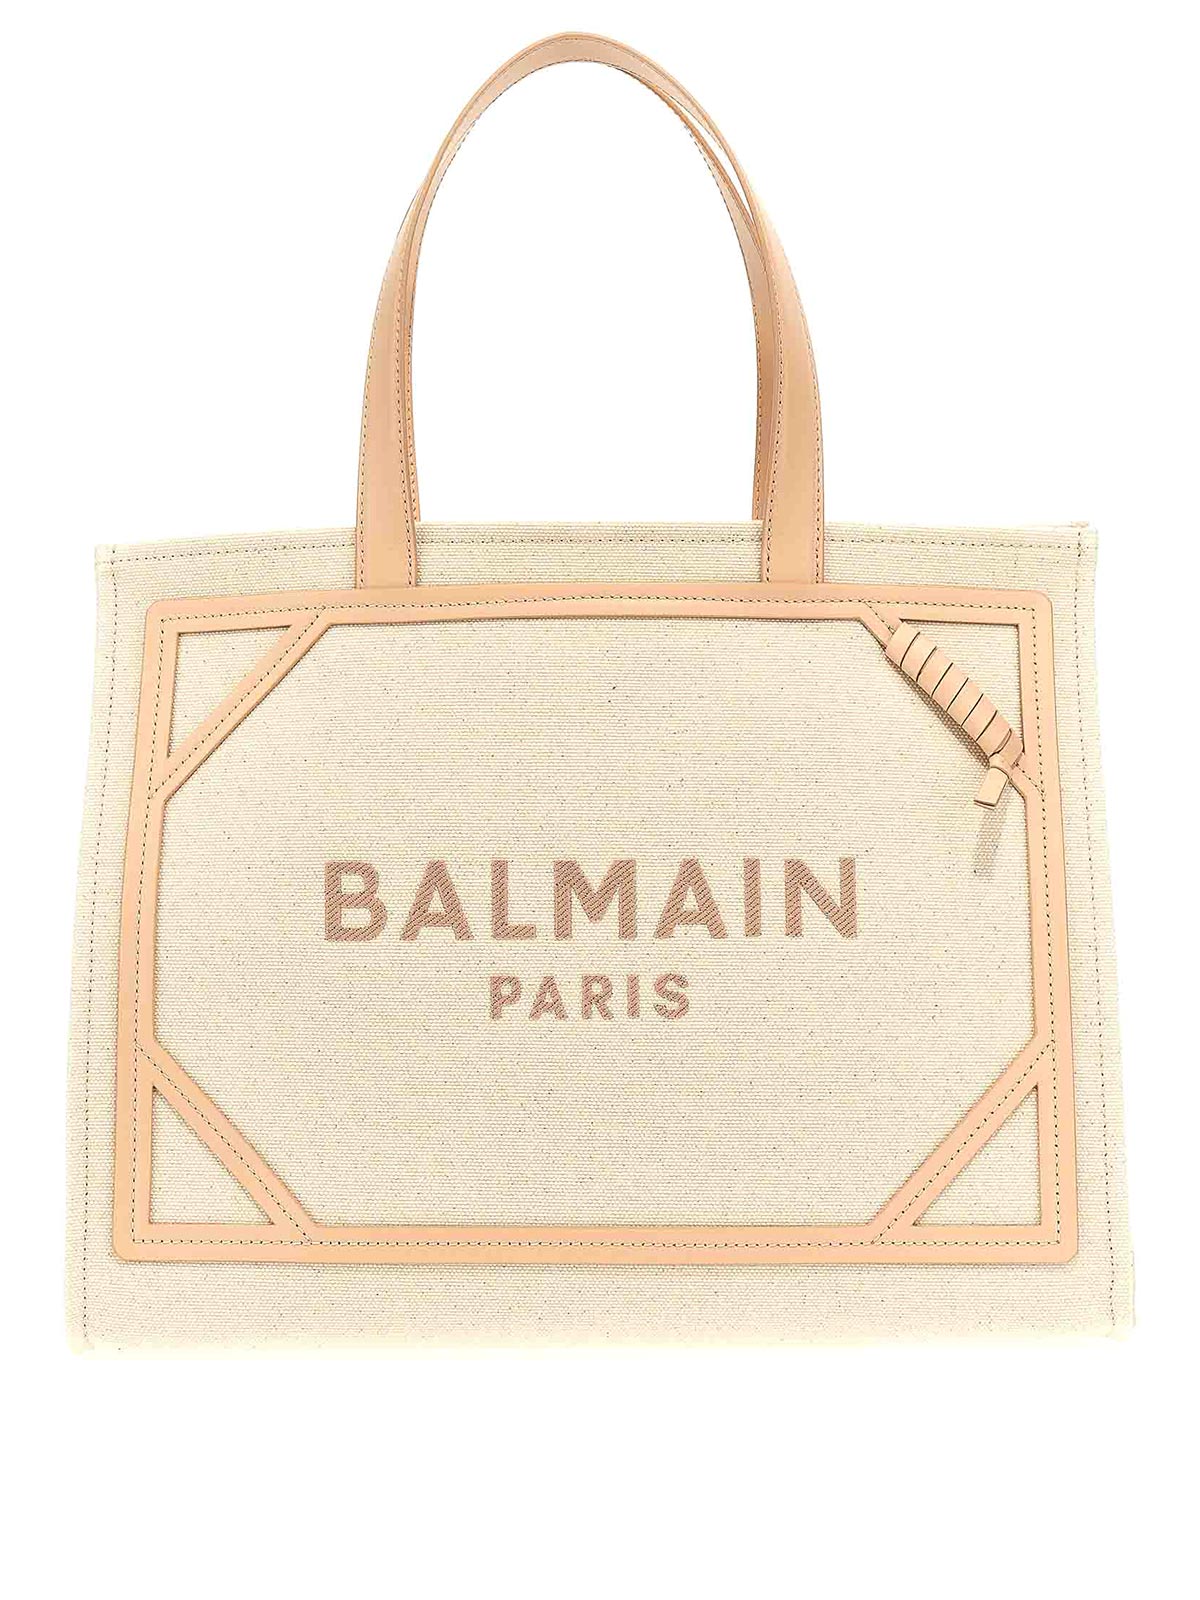 Balmain B-army 24 Shopping Bag In Nude & Neutrals